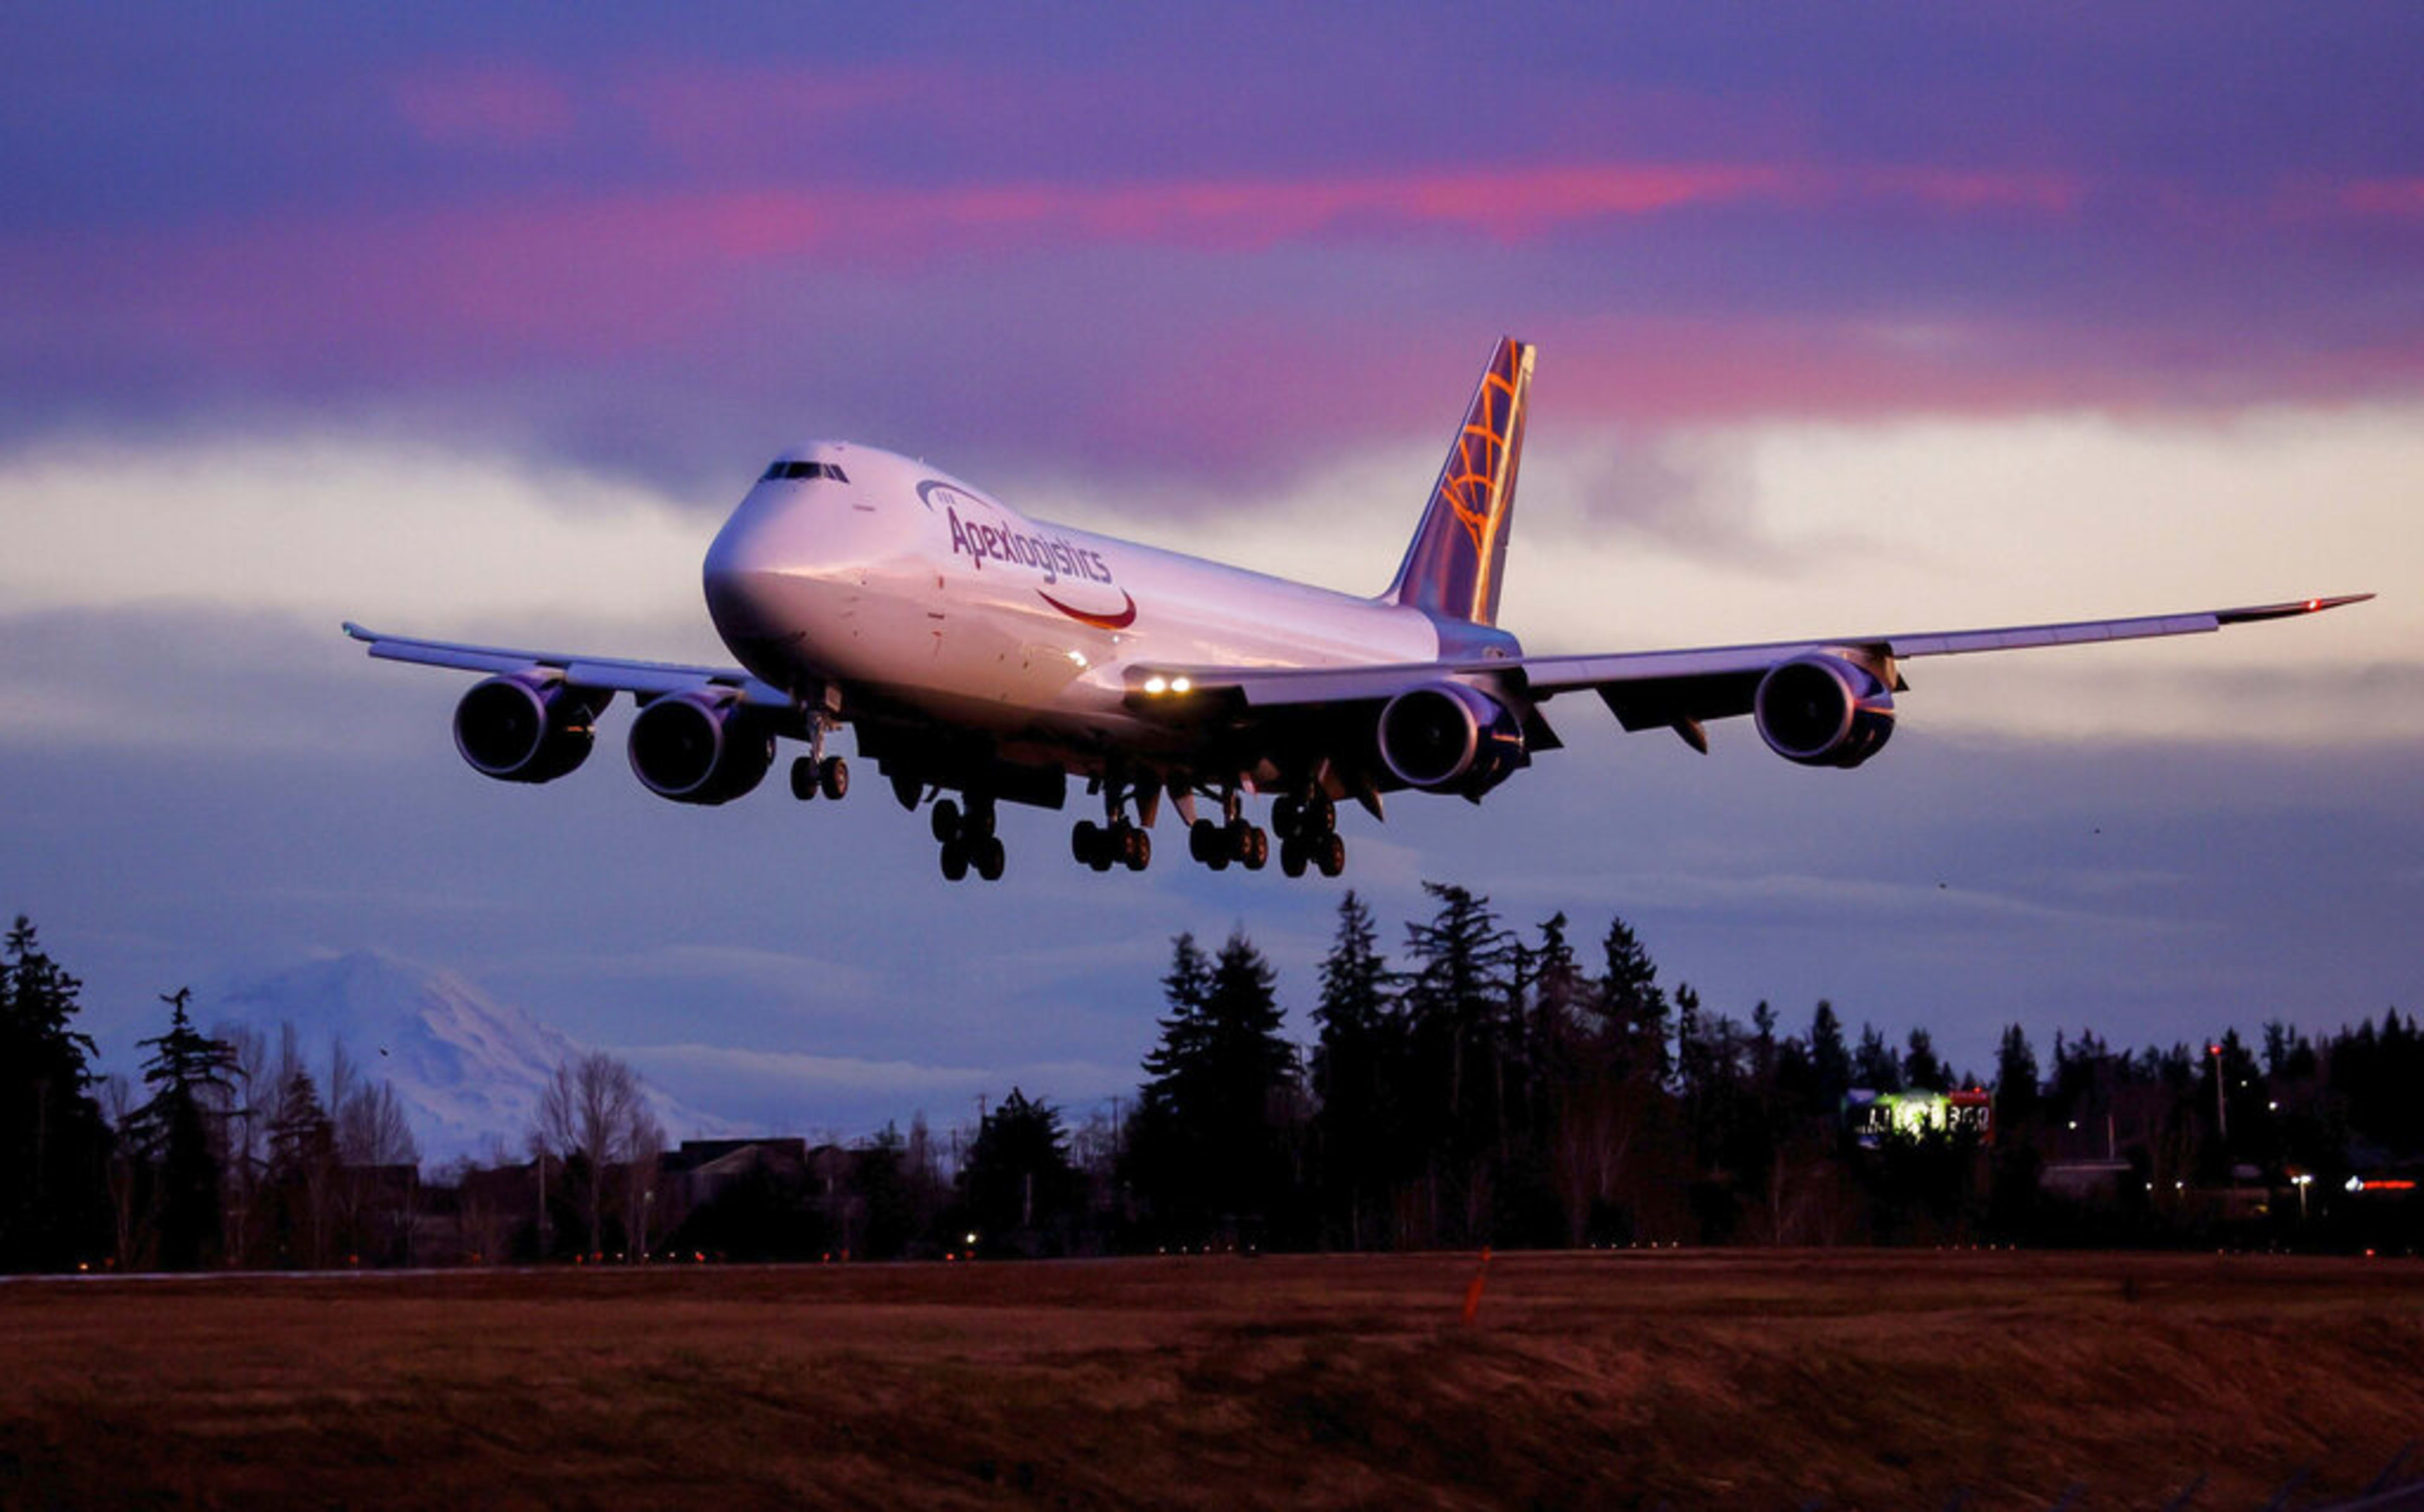 Goodbye, jumbo jet! Final sendoff for Boeing’s long-flying 747